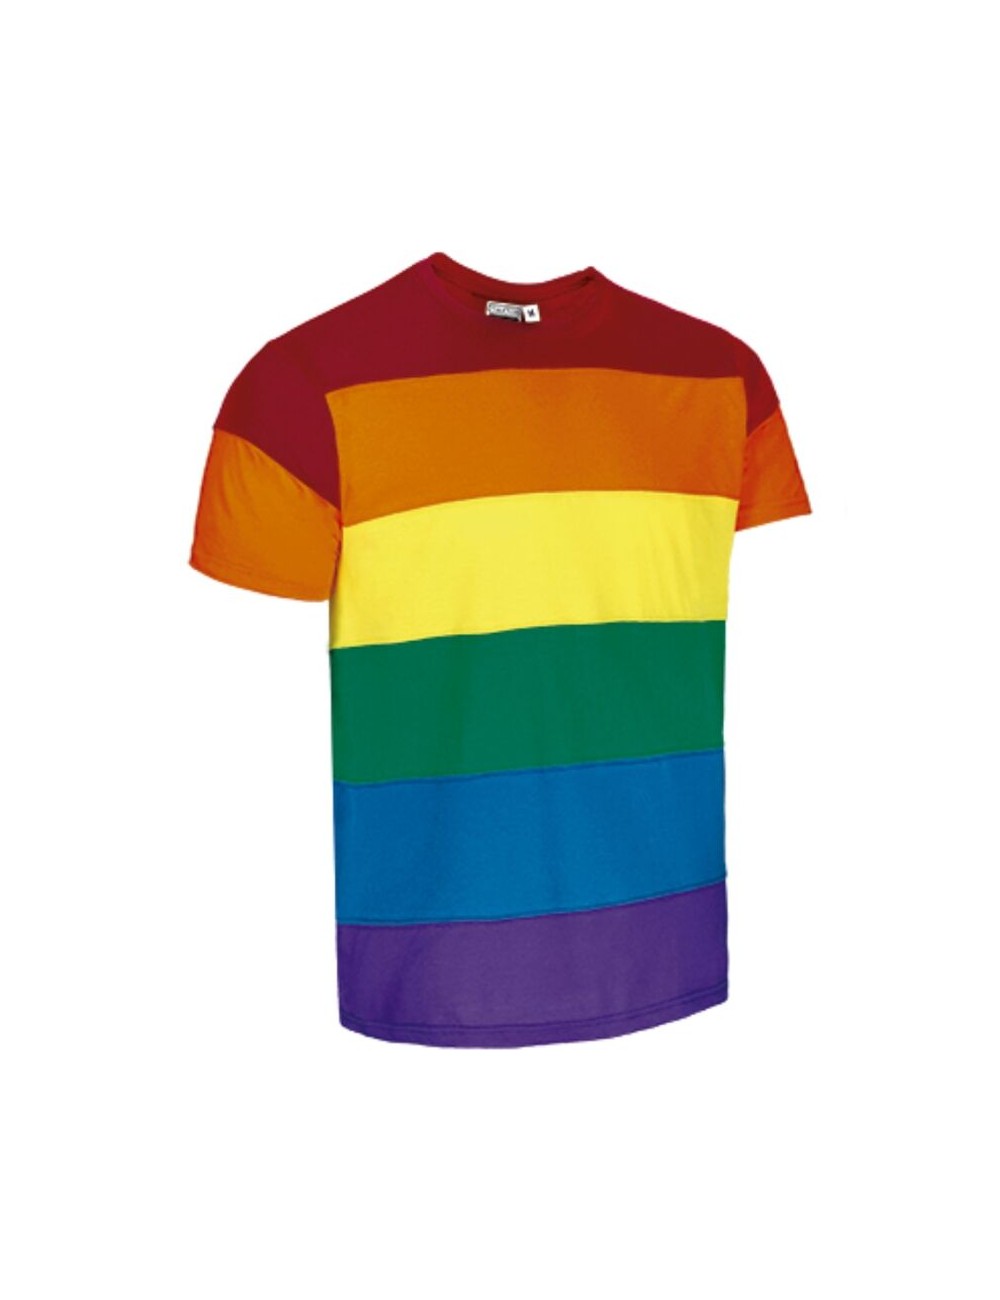 PRIDE - T-SHIRT LGBT TAGLIA XXL